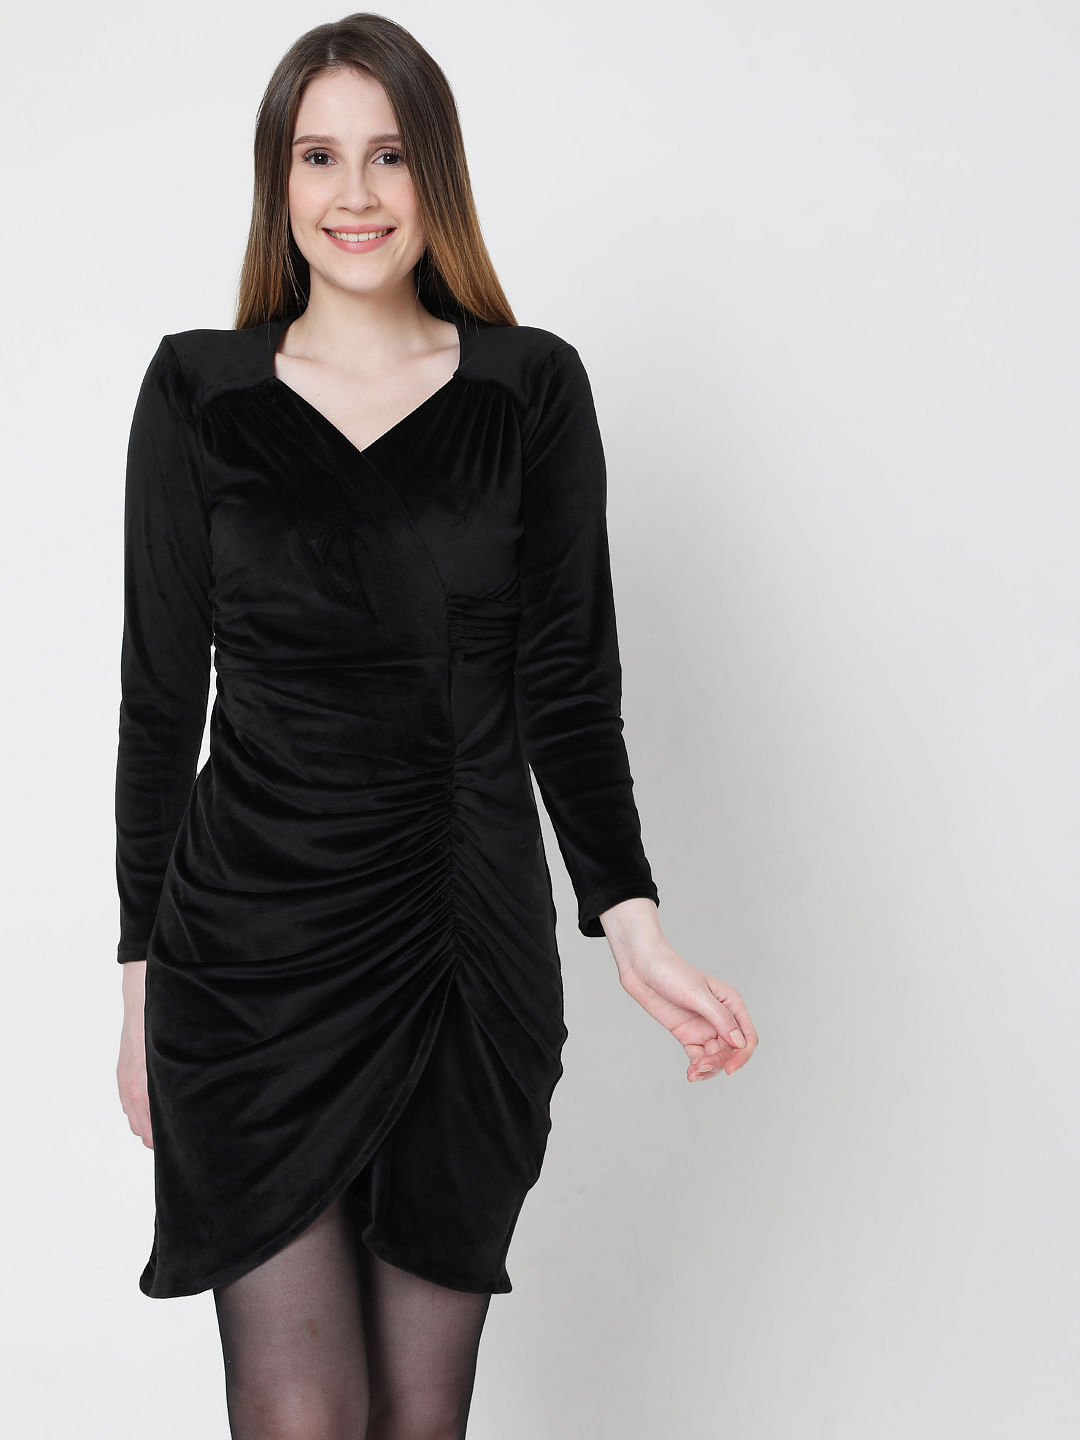 Buy Black Velvet Ruched Bodycon Dress ...